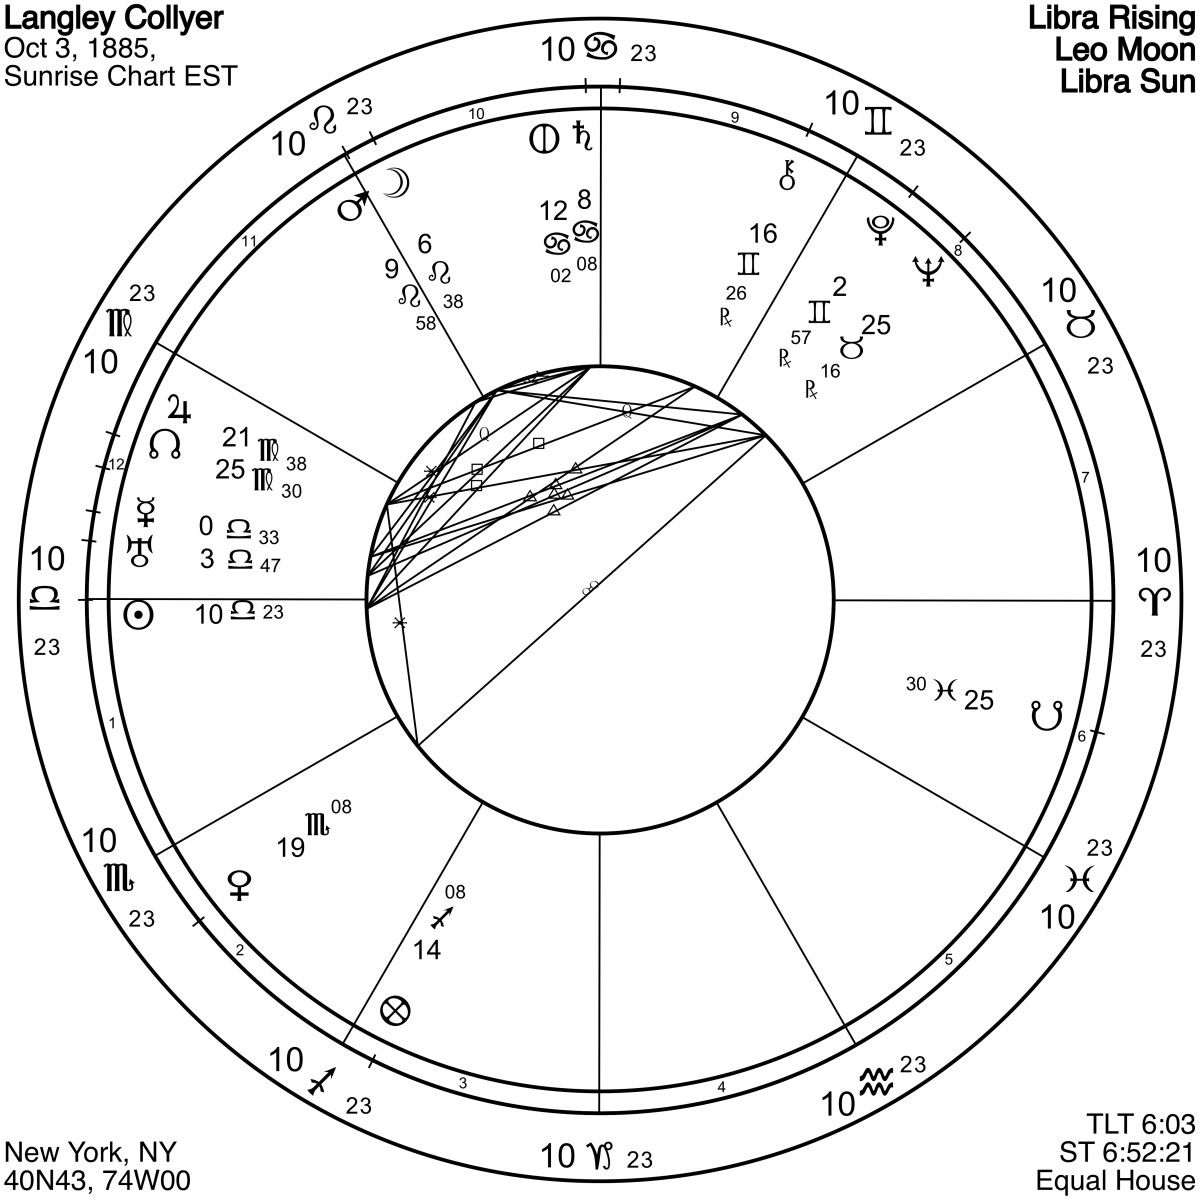 兰利·科利耶的图表，就像他哥哥的一样，非常片面或专注。在兰利的案例中，专注变成了痴迷。请注意异常活跃的月球-火星合点(在11点钟位置)指挥着所有其他行星的“注意力”。